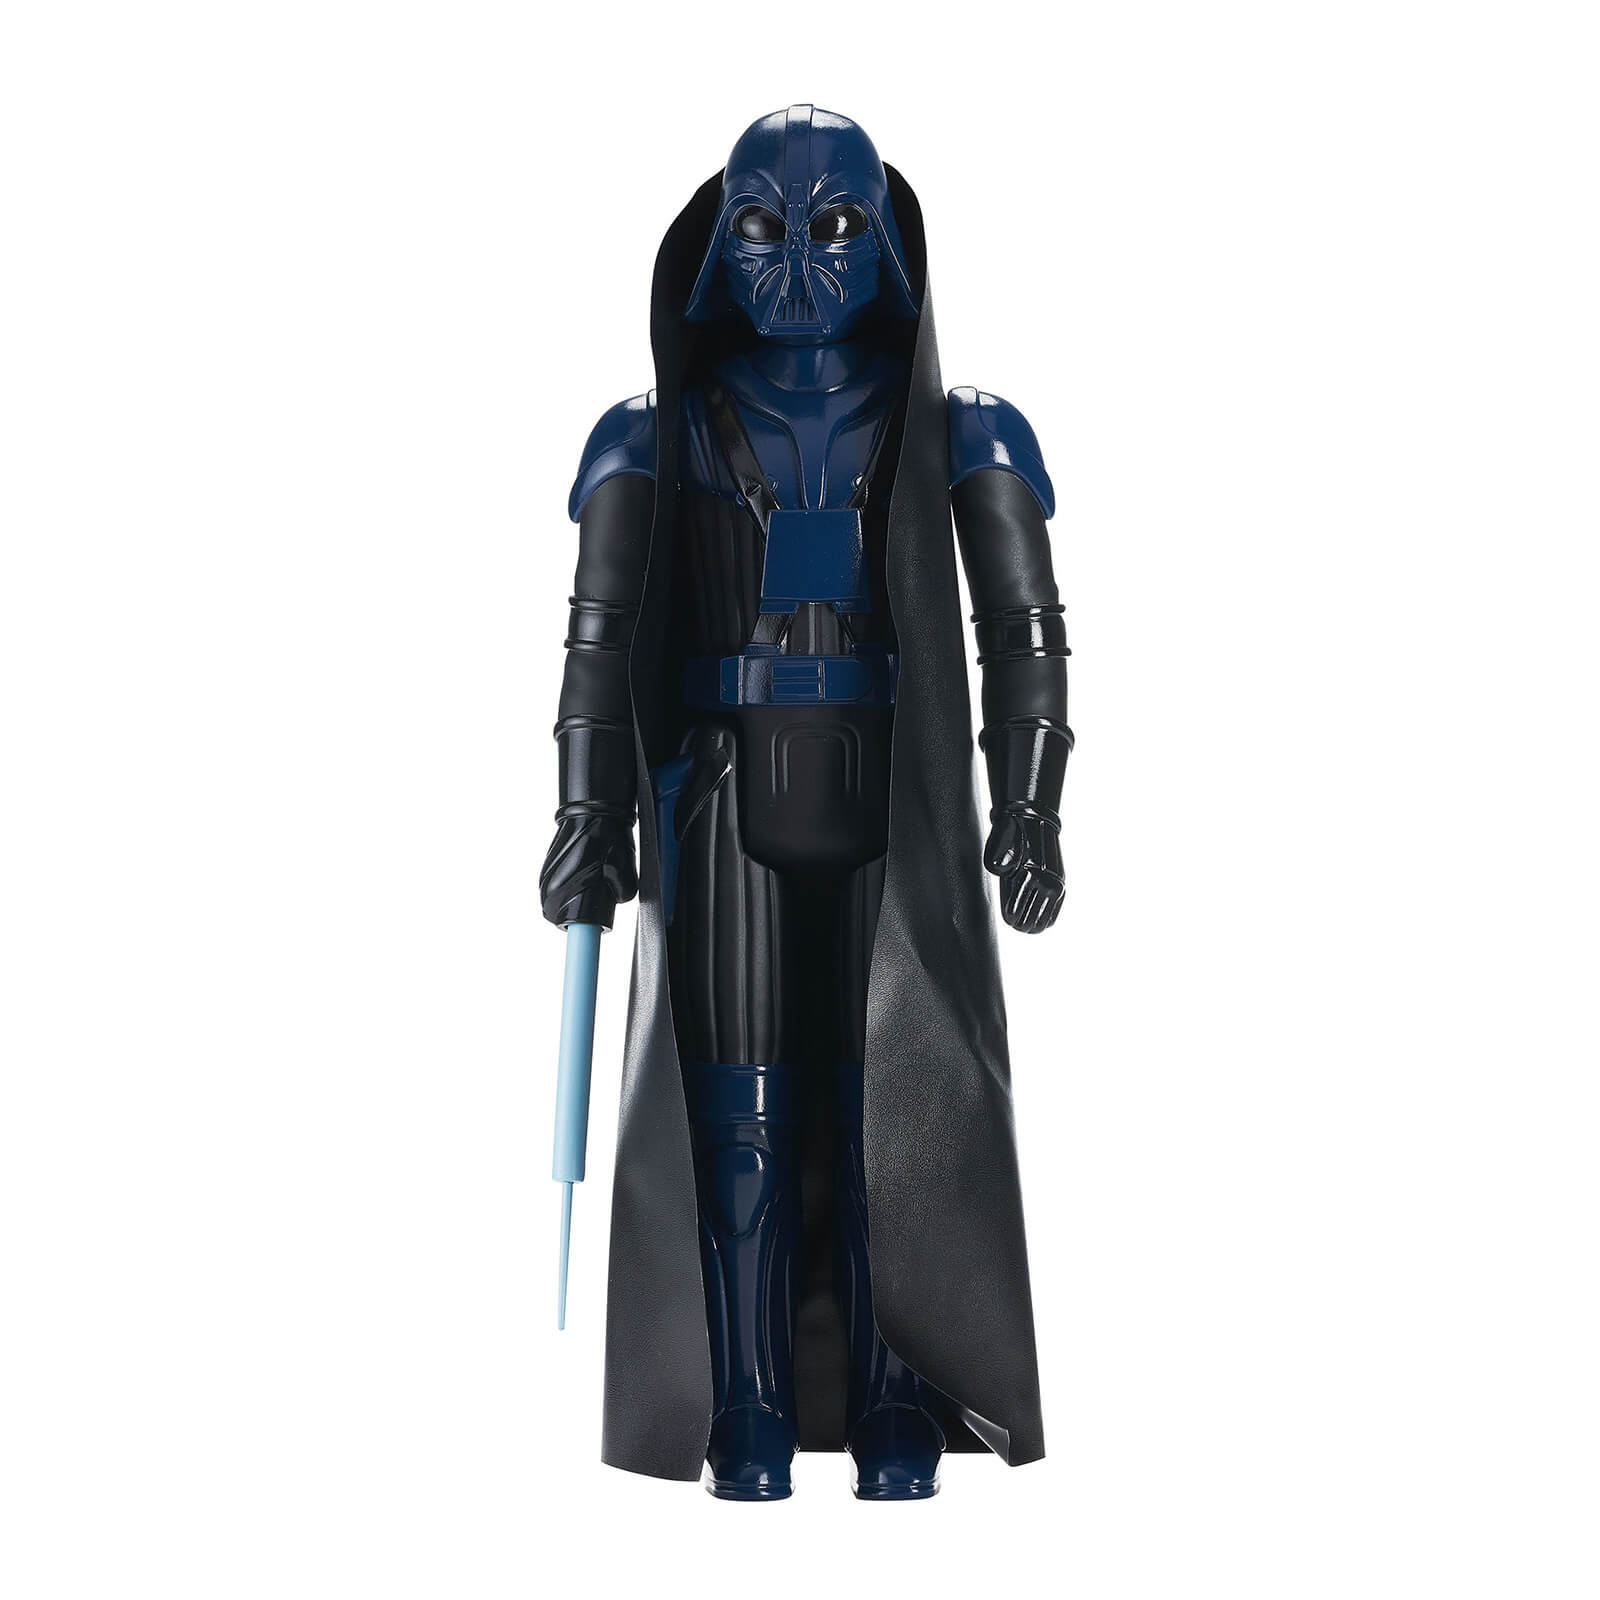 Gentle Giant Star Wars Jumbo Figure - Concept Darth Vader